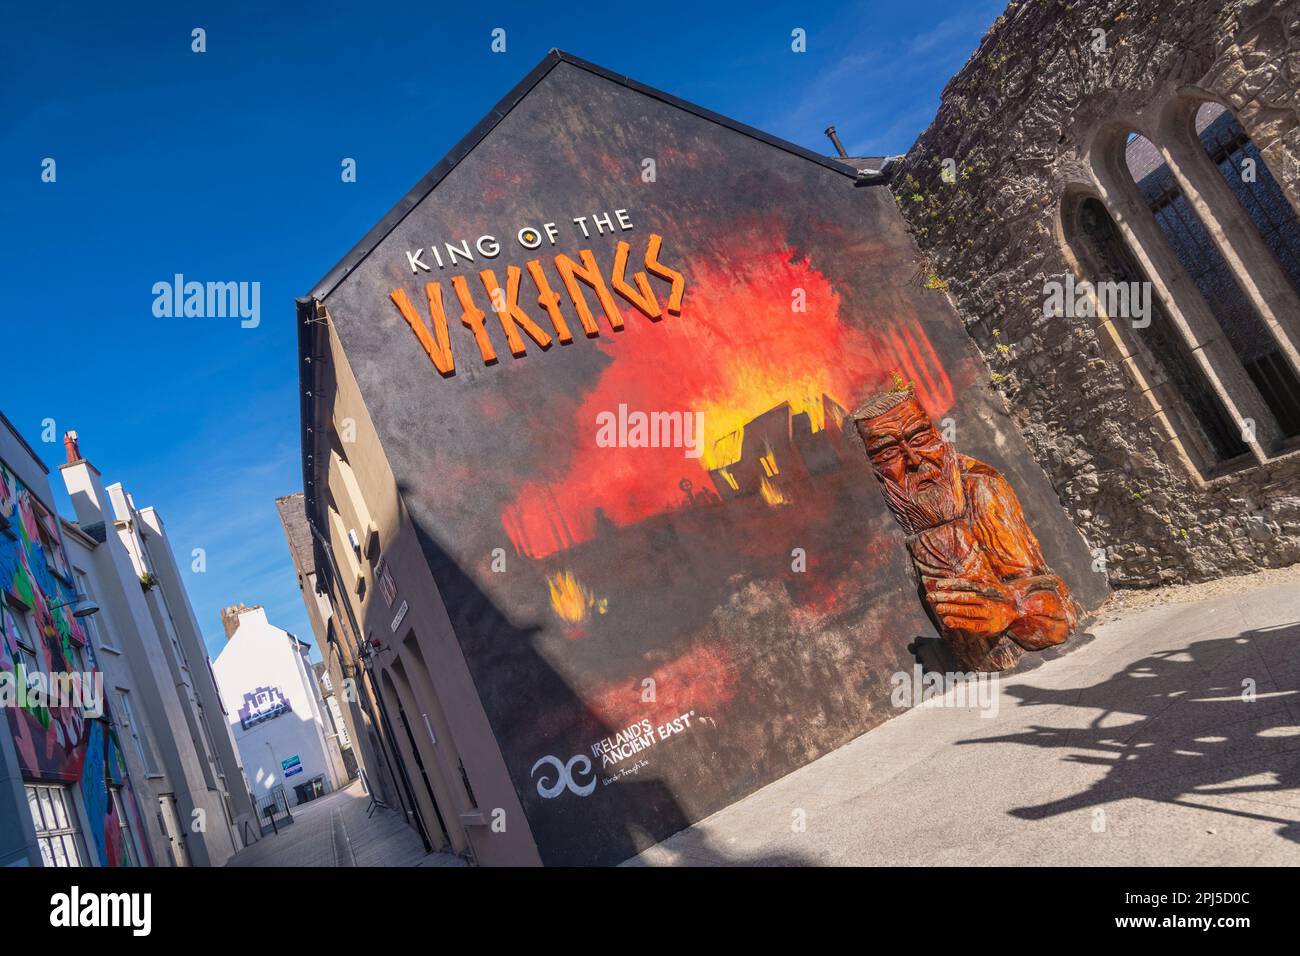 Irlande, Comté de Waterford, ville de Waterford, King of the Vikings centre culturel qui est la première expérience de réalité virtuelle au monde dans un authentique Banque D'Images